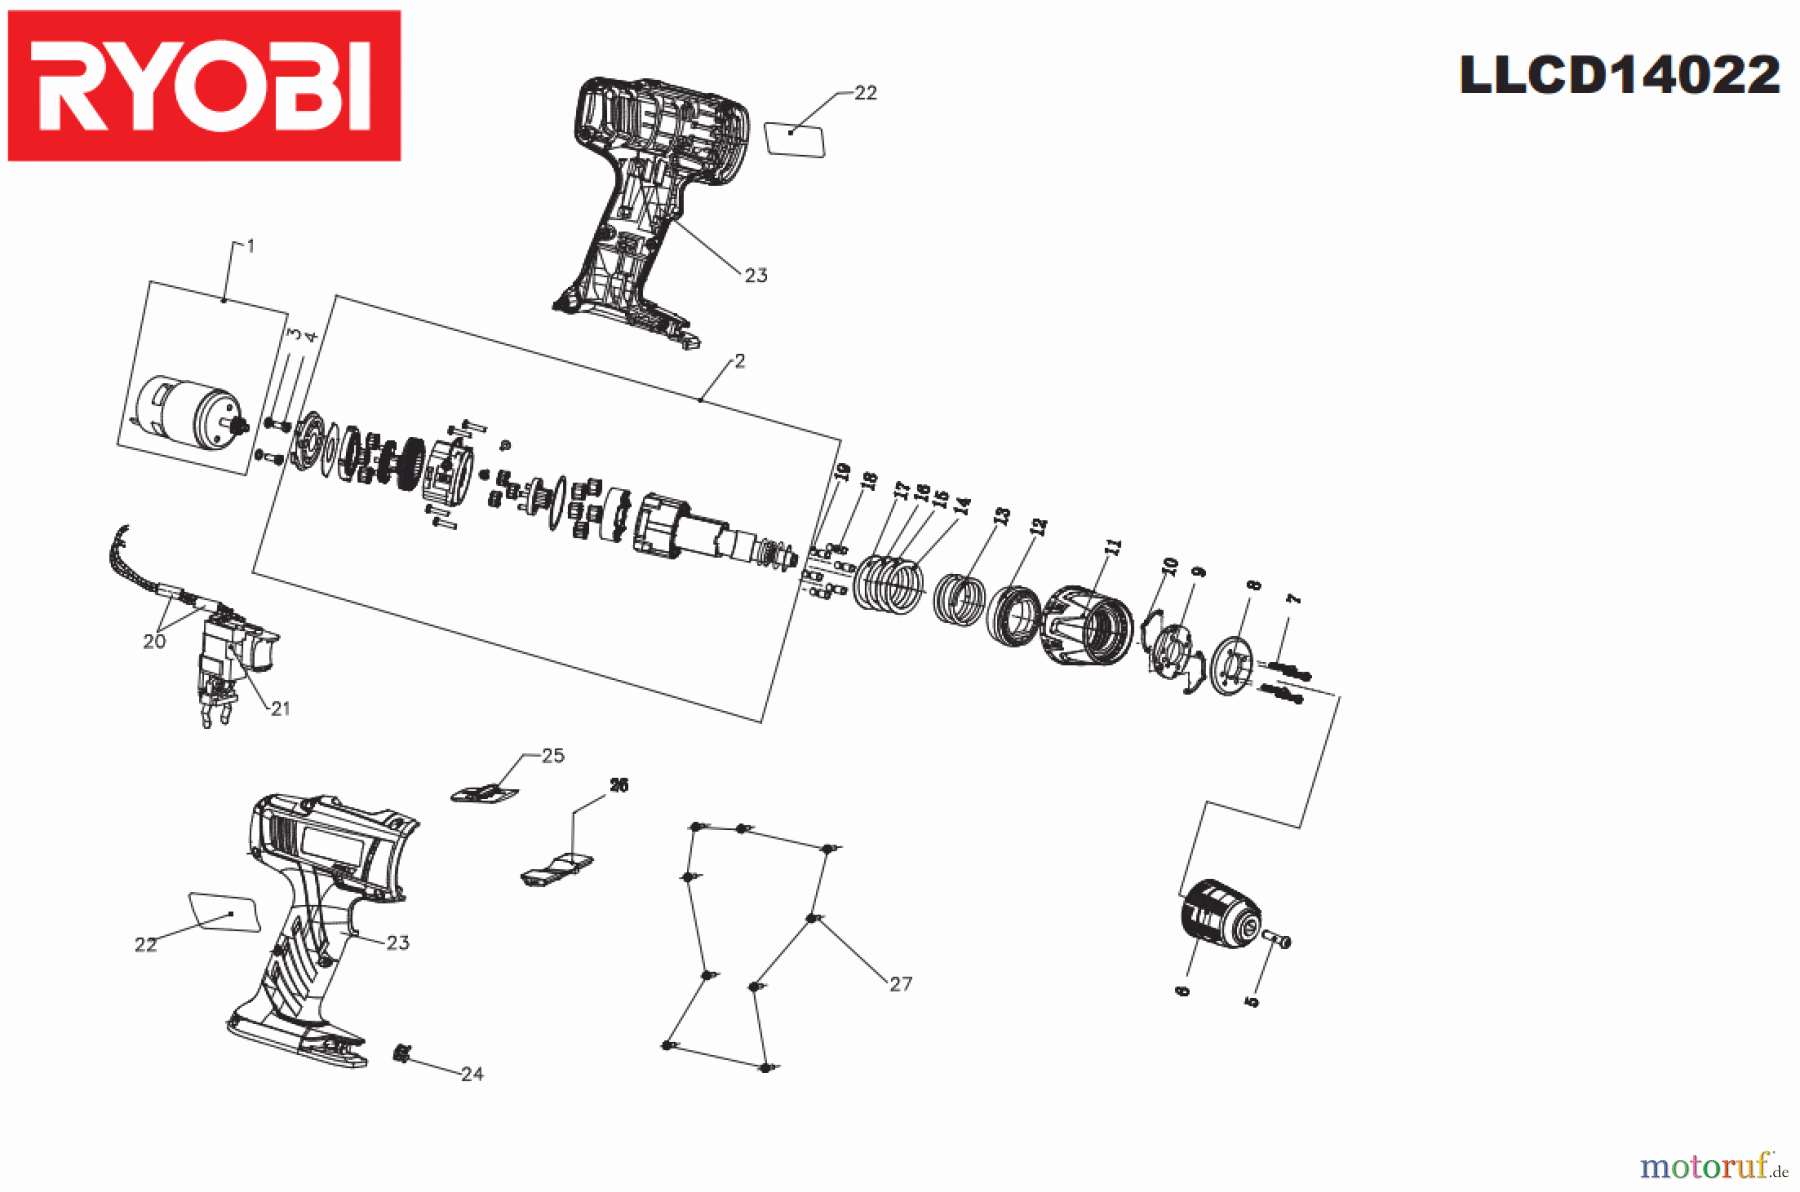  Ryobi (Schlag-)Bohrschrauber Bohrschrauber mit Schlagbohrfunktion  LLCD14022 Seite 1